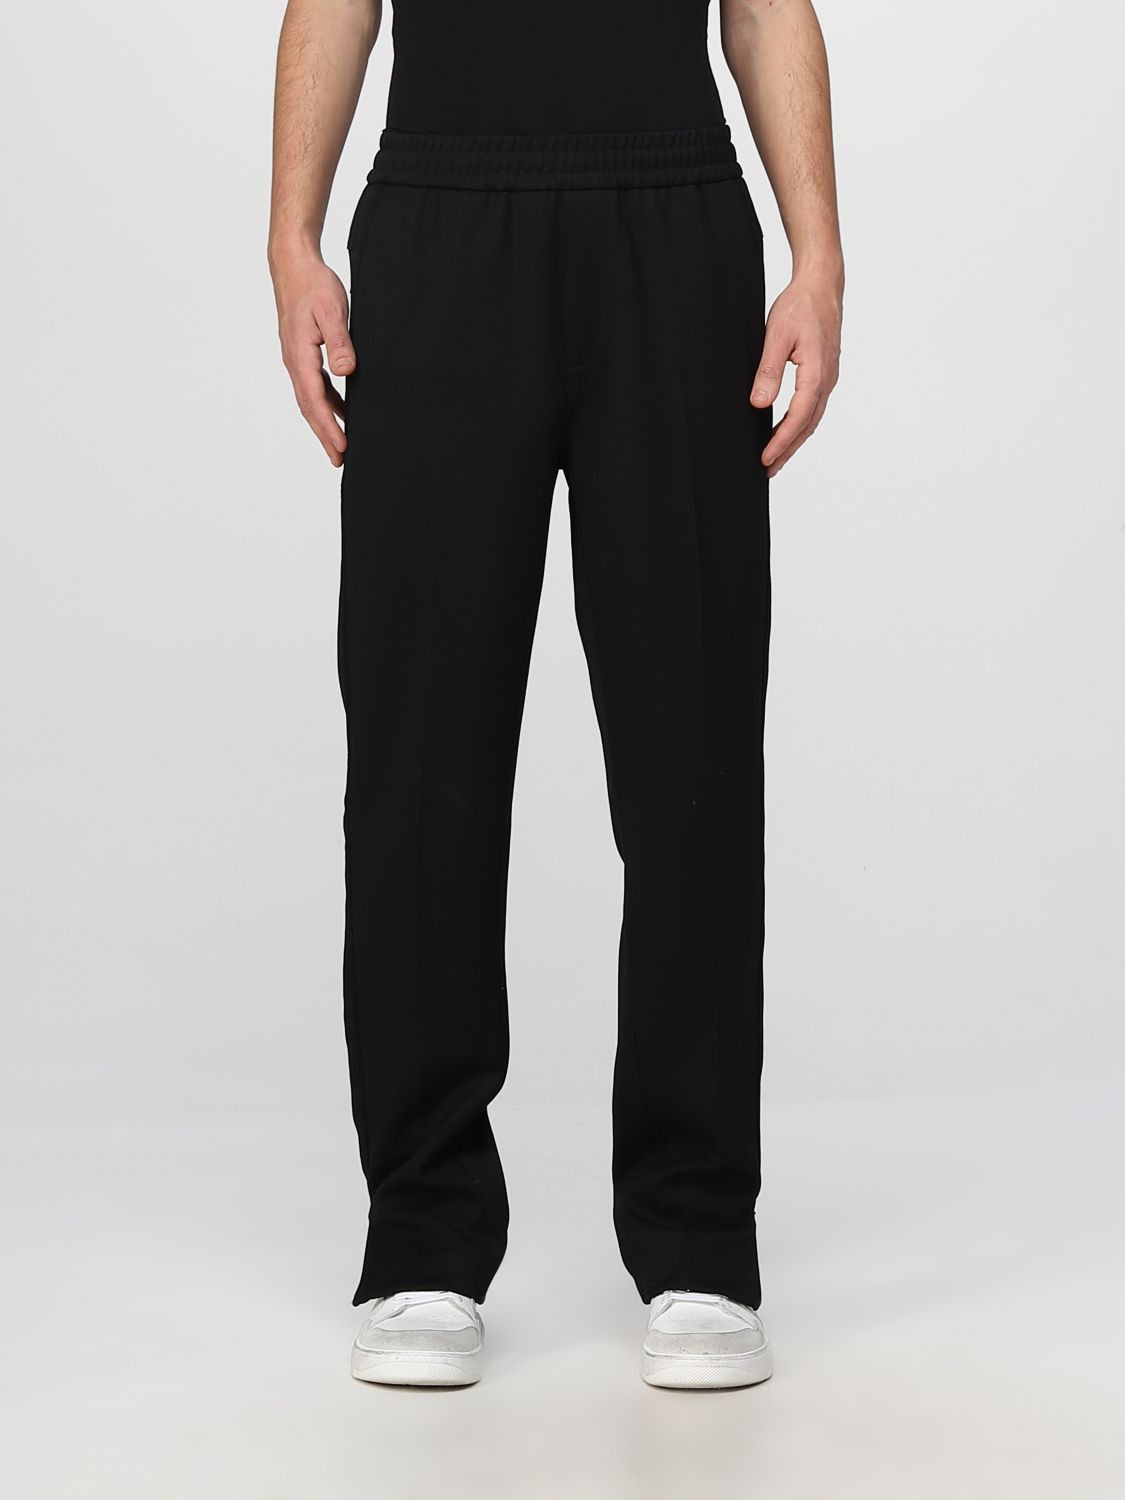 REPRESENT: pants for man - Black | Represent pants M08143 online at ...